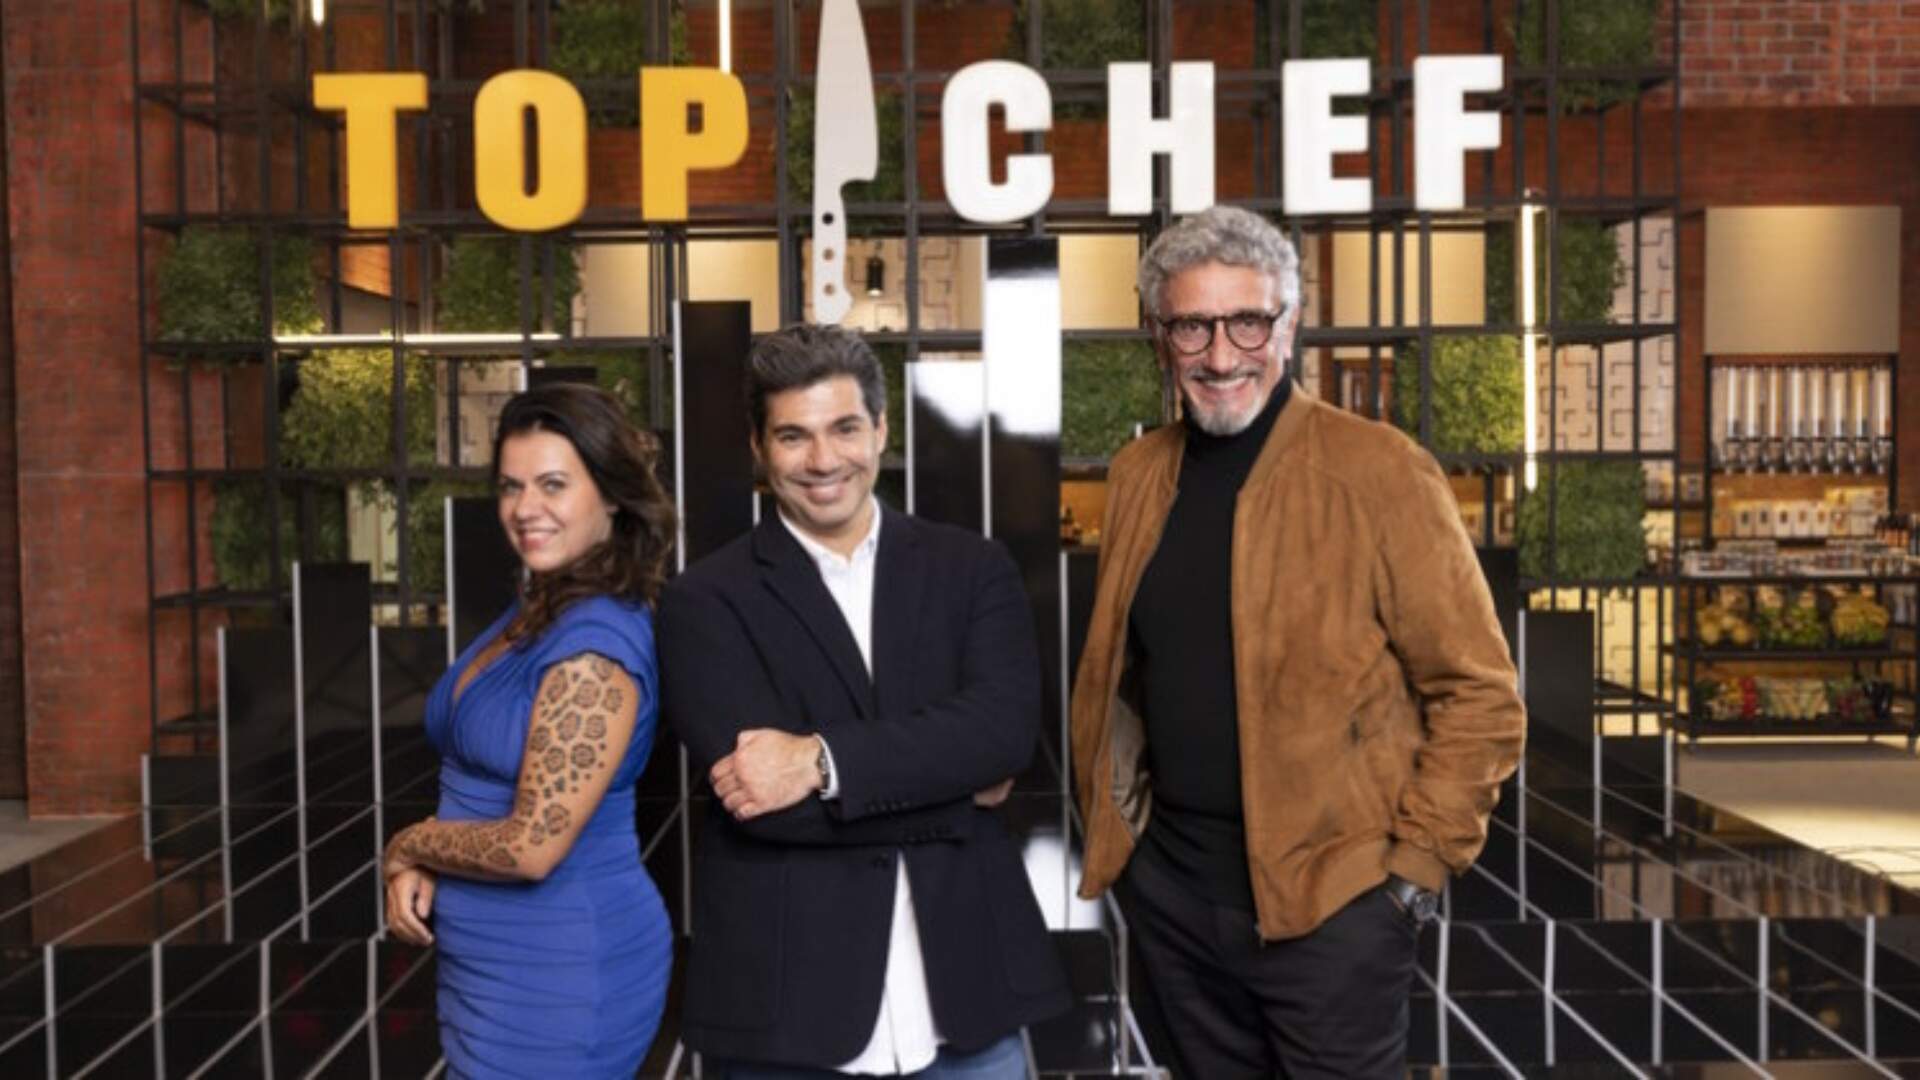 Top Chef: Pela primeira vez, reality show da Record anuncia dinâmica inédita e surpreende fãs - Metropolitana FM